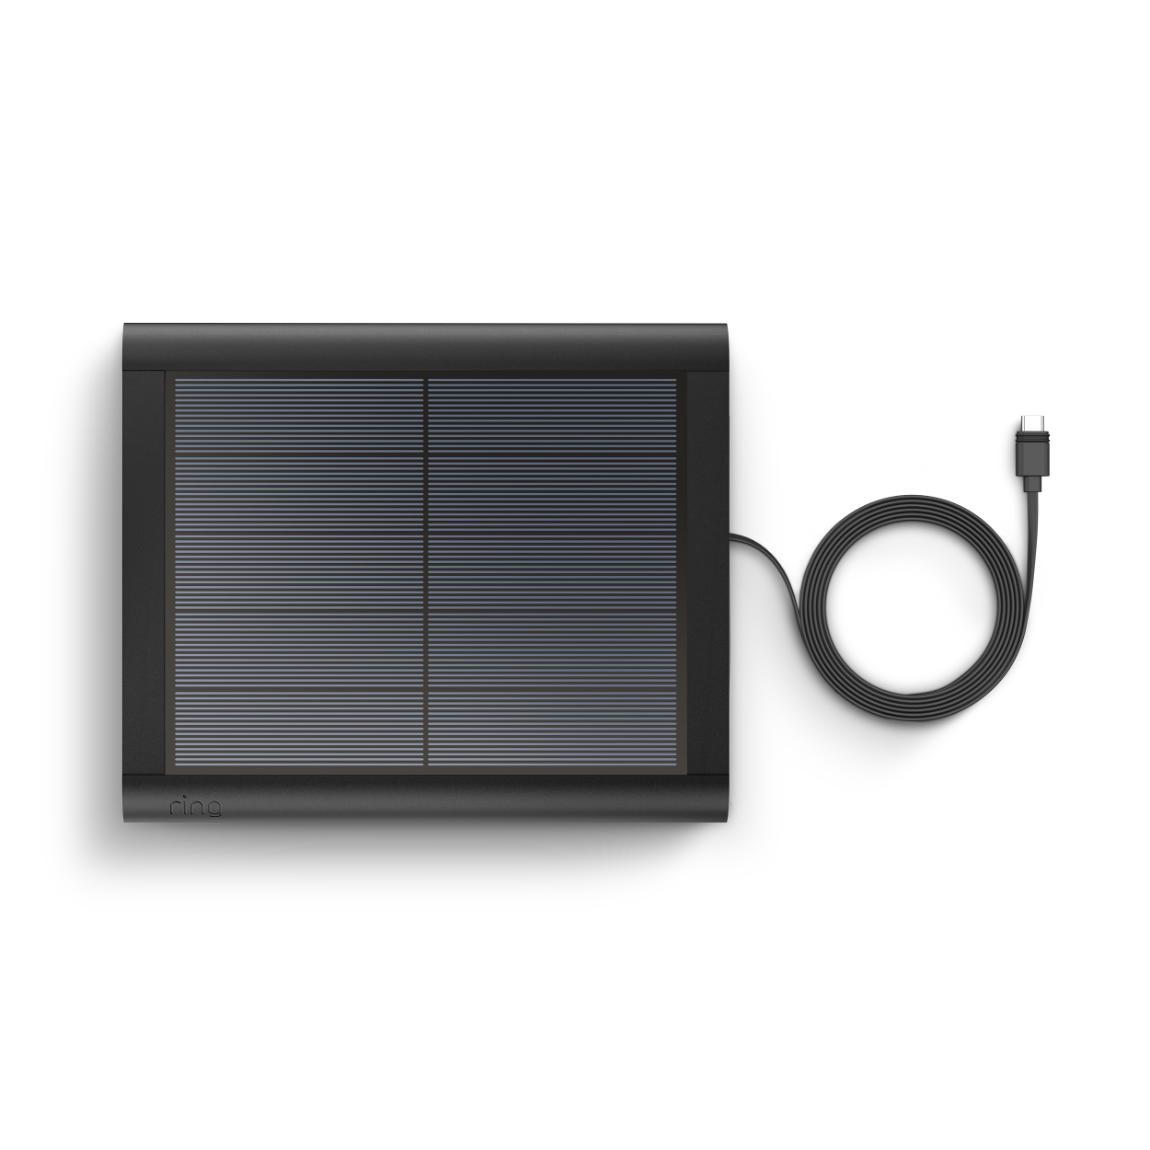 Ring Stick Up Cam Battery 2er-Set + Solar Panel (USB-C) 2er-Set